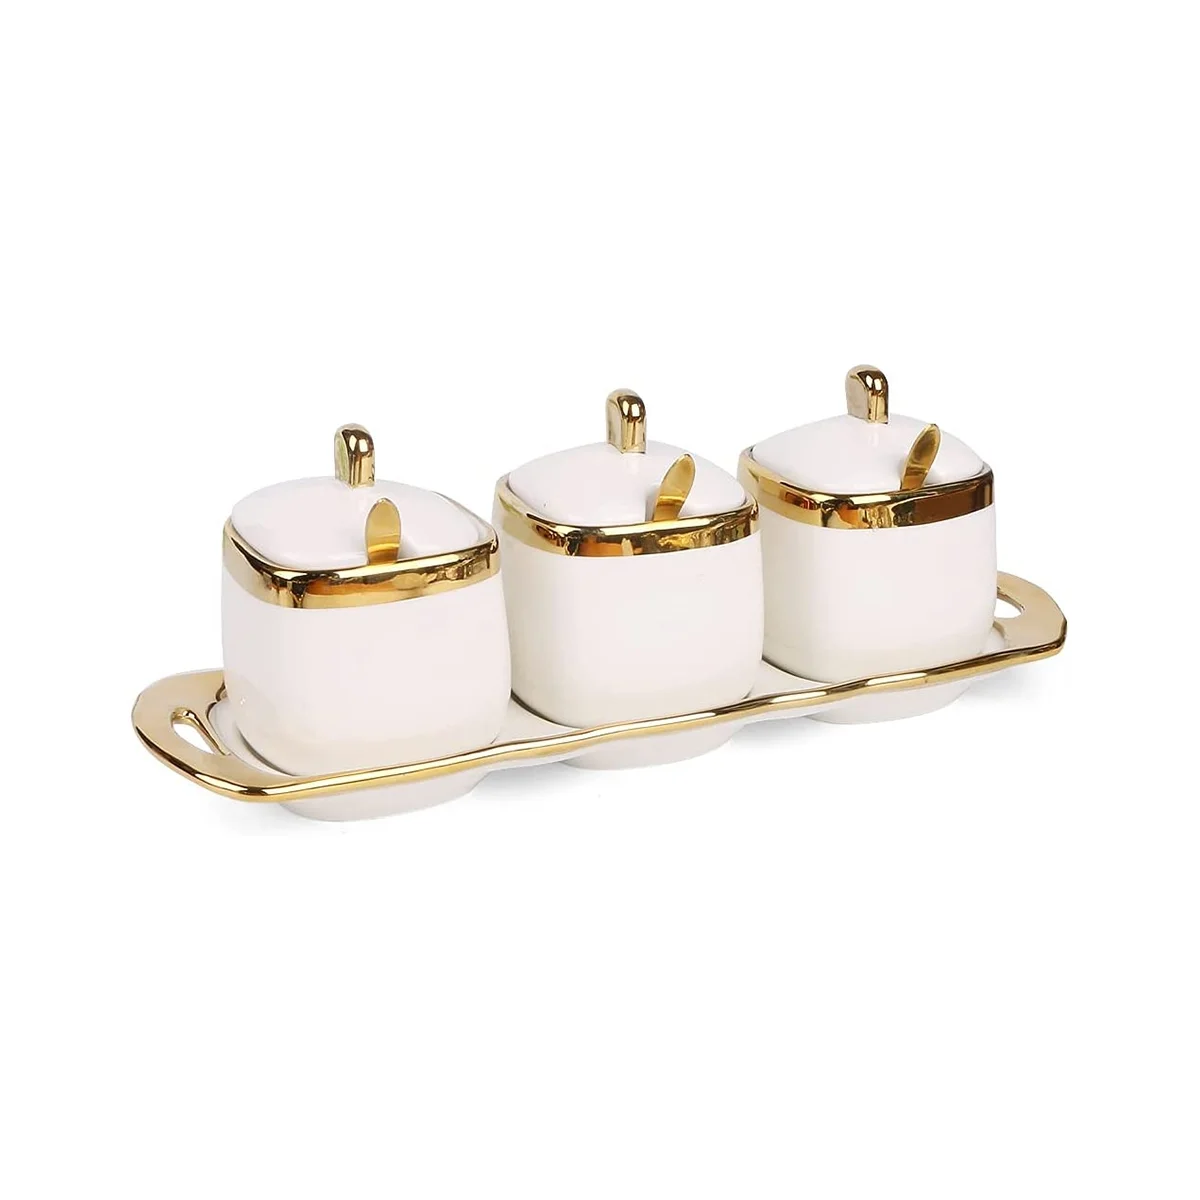 

3Pcs Ceramic Condiment Pots Porcelain Sugar Bowls Decorative Gold Salt Containers Pepper Boxes Kitchen Spice Jars,A